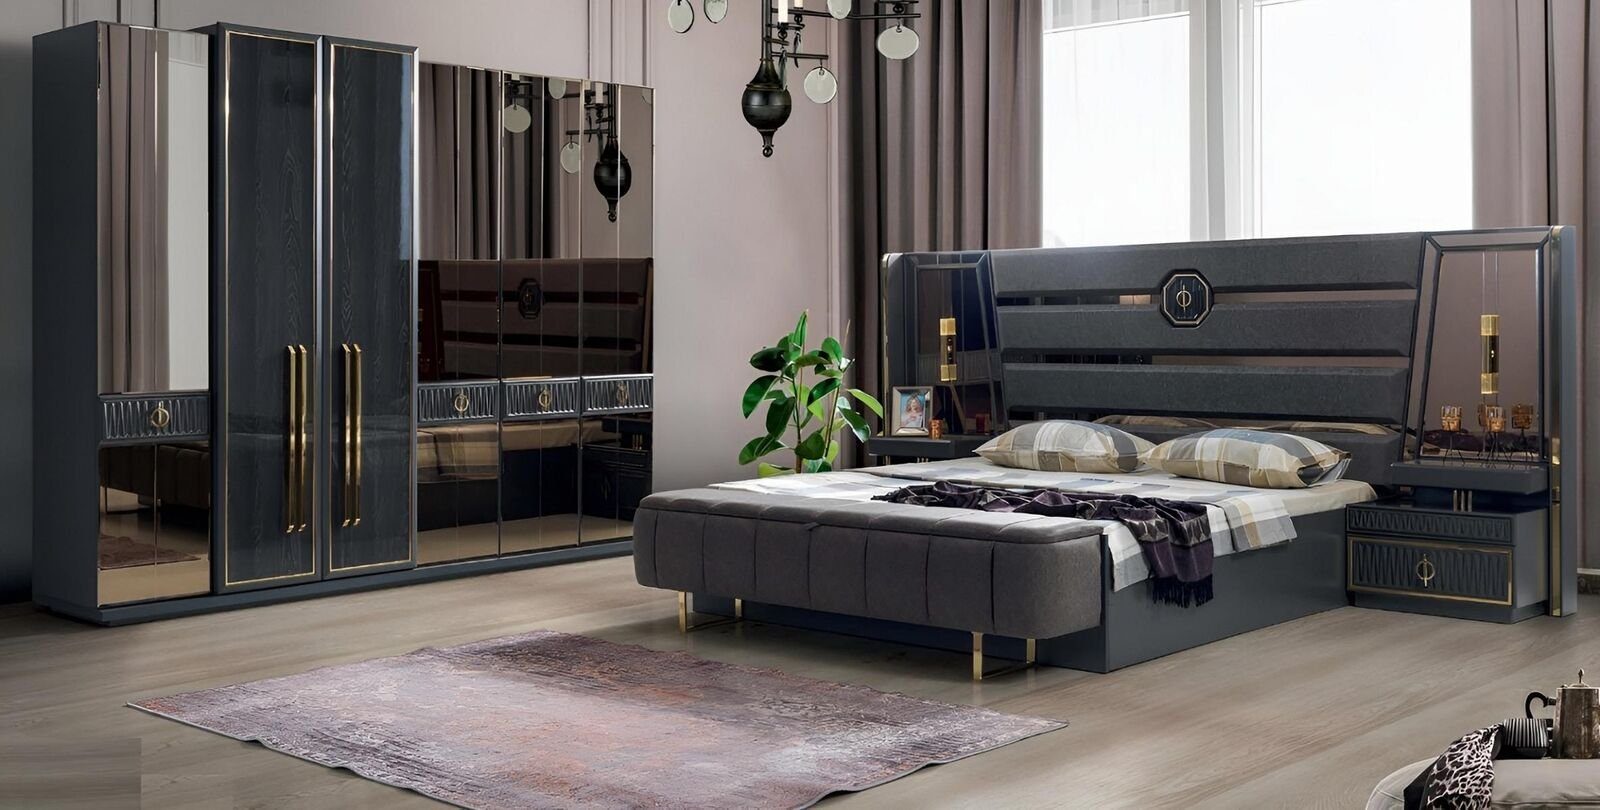 JVmoebel Schlafzimmer-Set Design Komplett Schlafzimmer Set Doppel Bett Luxus Kleiderschrank, (Bett / 2x Nachttische / Kleiderschrank), Made In Europe | Komplett-Jugendzimmer